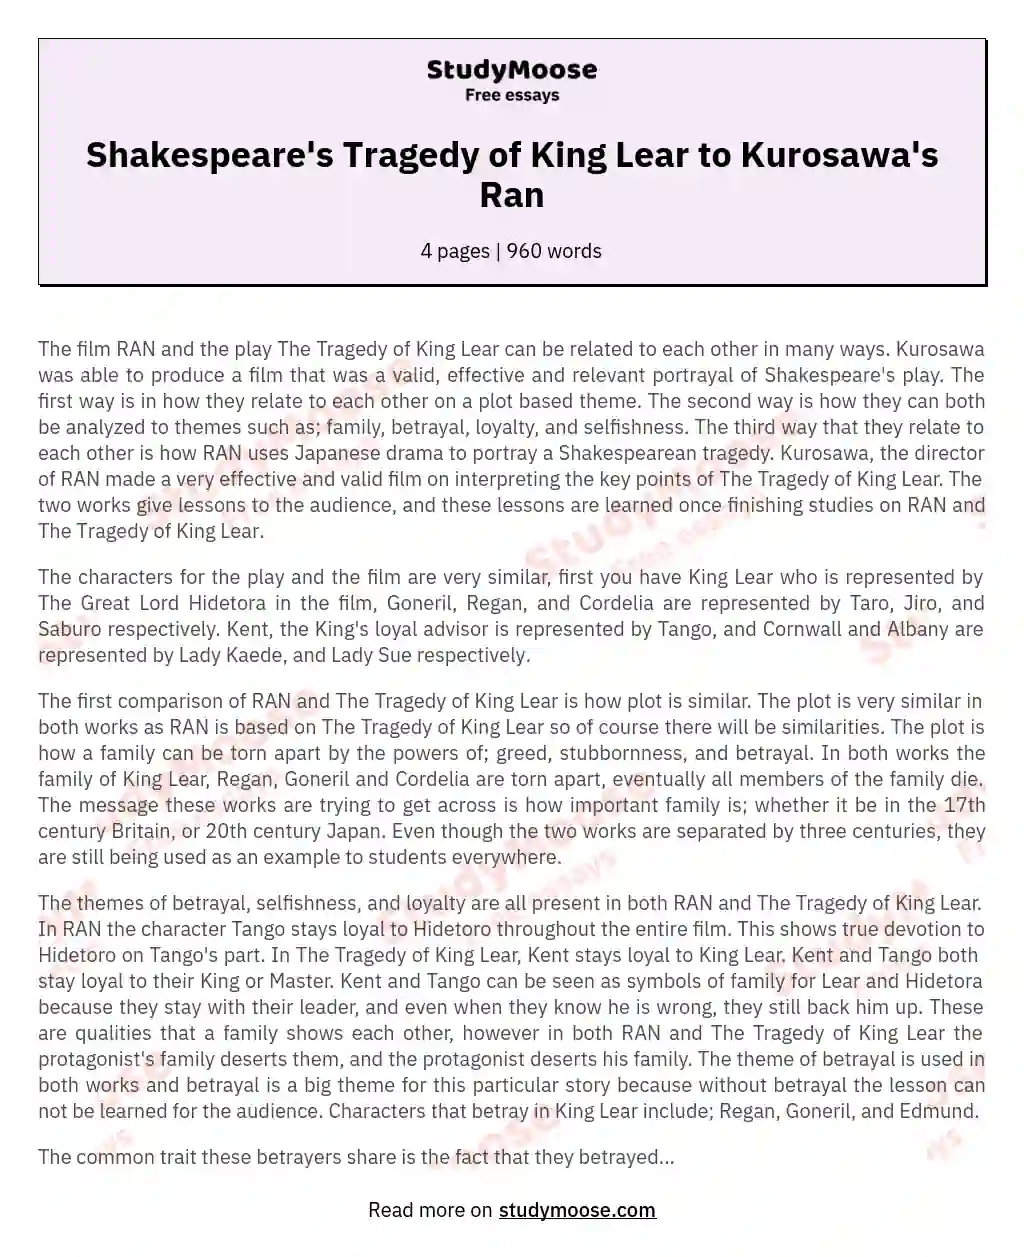 Shakespeare's Tragedy of King Lear to Kurosawa's Ran